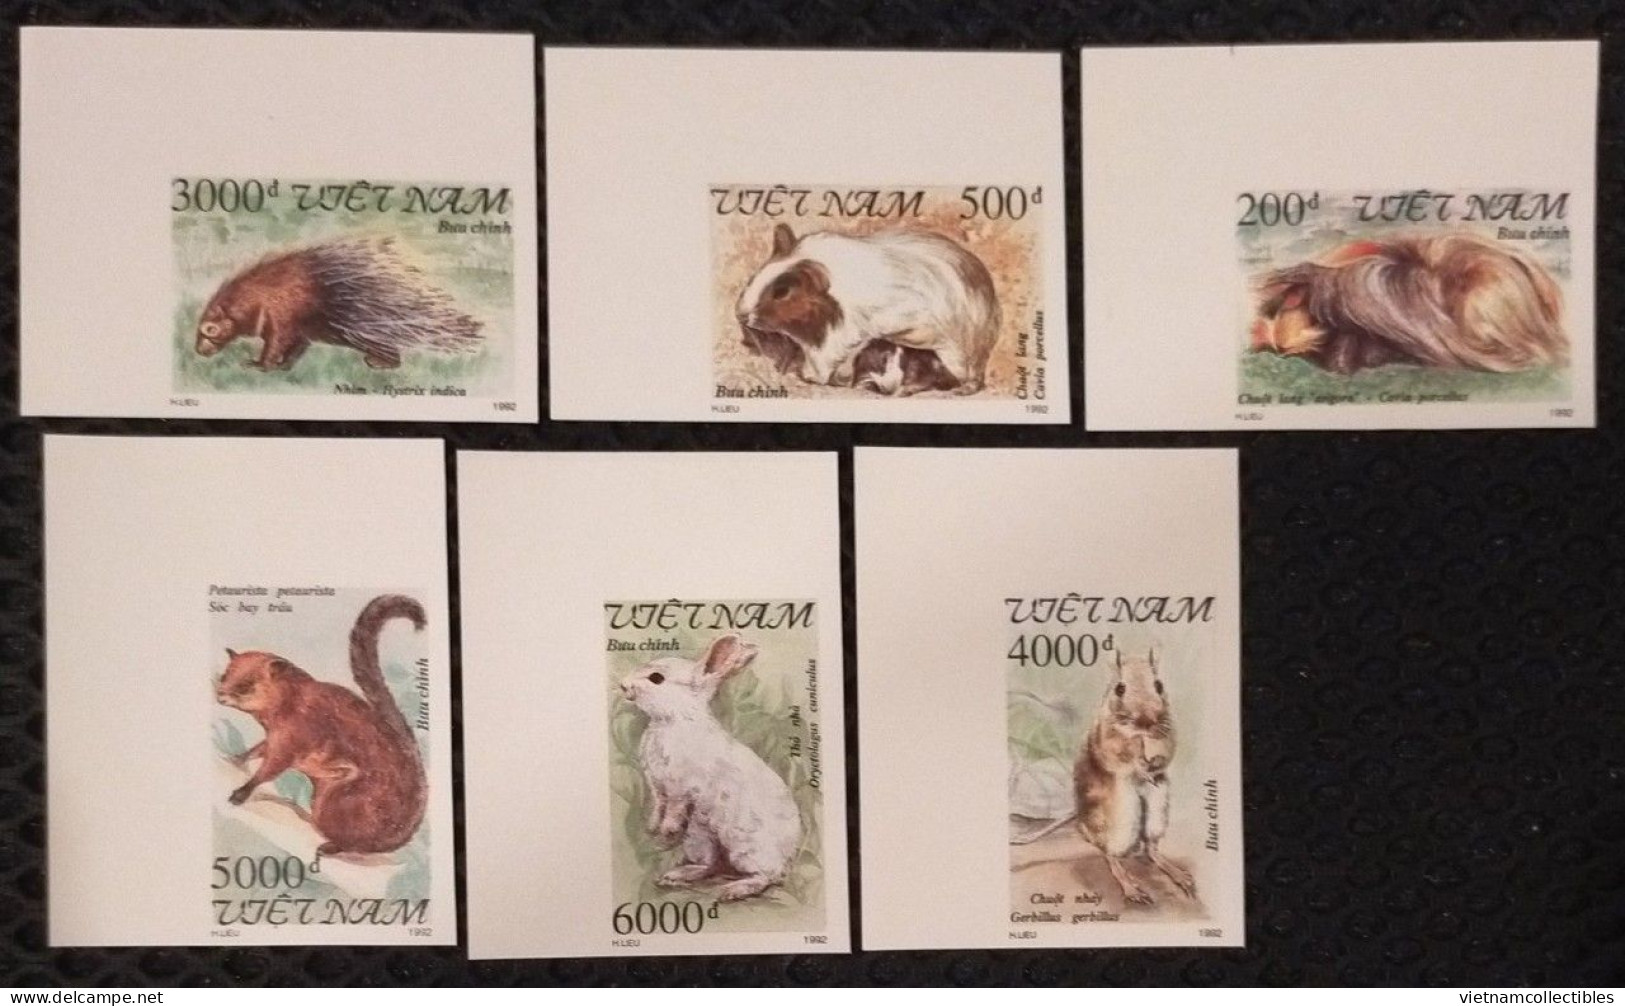 Vietnam Viet Nam MNH Imperf Stamps 1992 : Rodent / Rabbit (Ms649) - Viêt-Nam